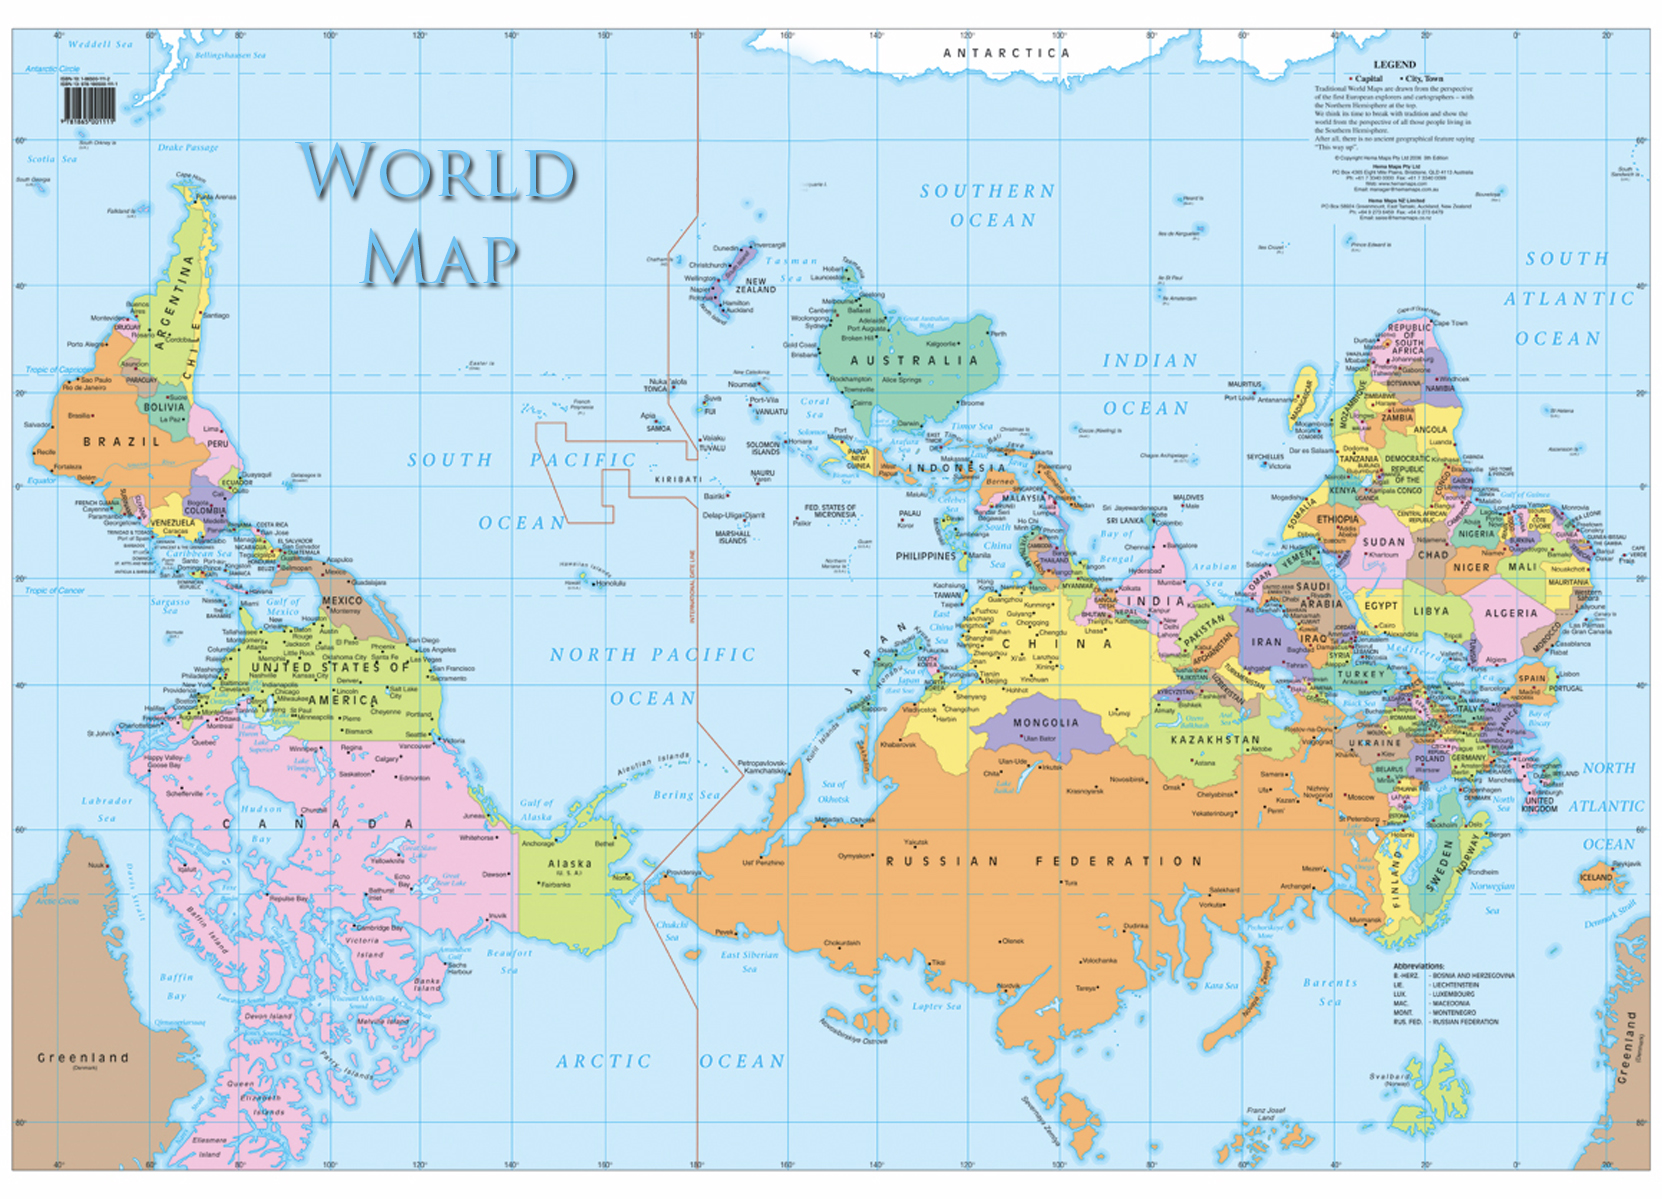  Liegt  Europa  auf jeder Weltkarte in der Mitte oder ist es 